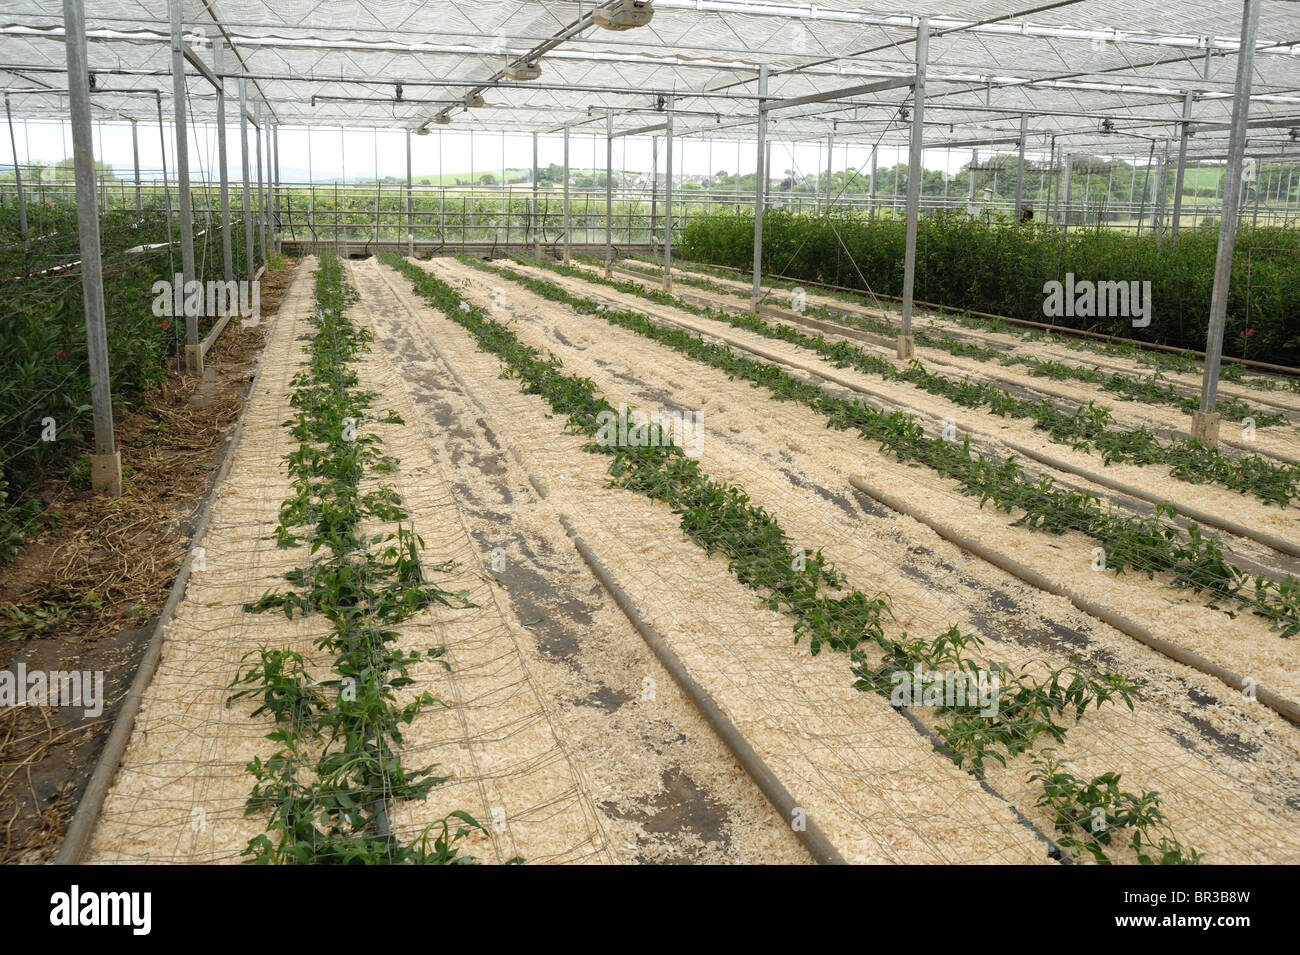 Junge Alstroemeria Pflanzen neu in einem kommerziellen Schnittblume Gewächshaus Stockfoto